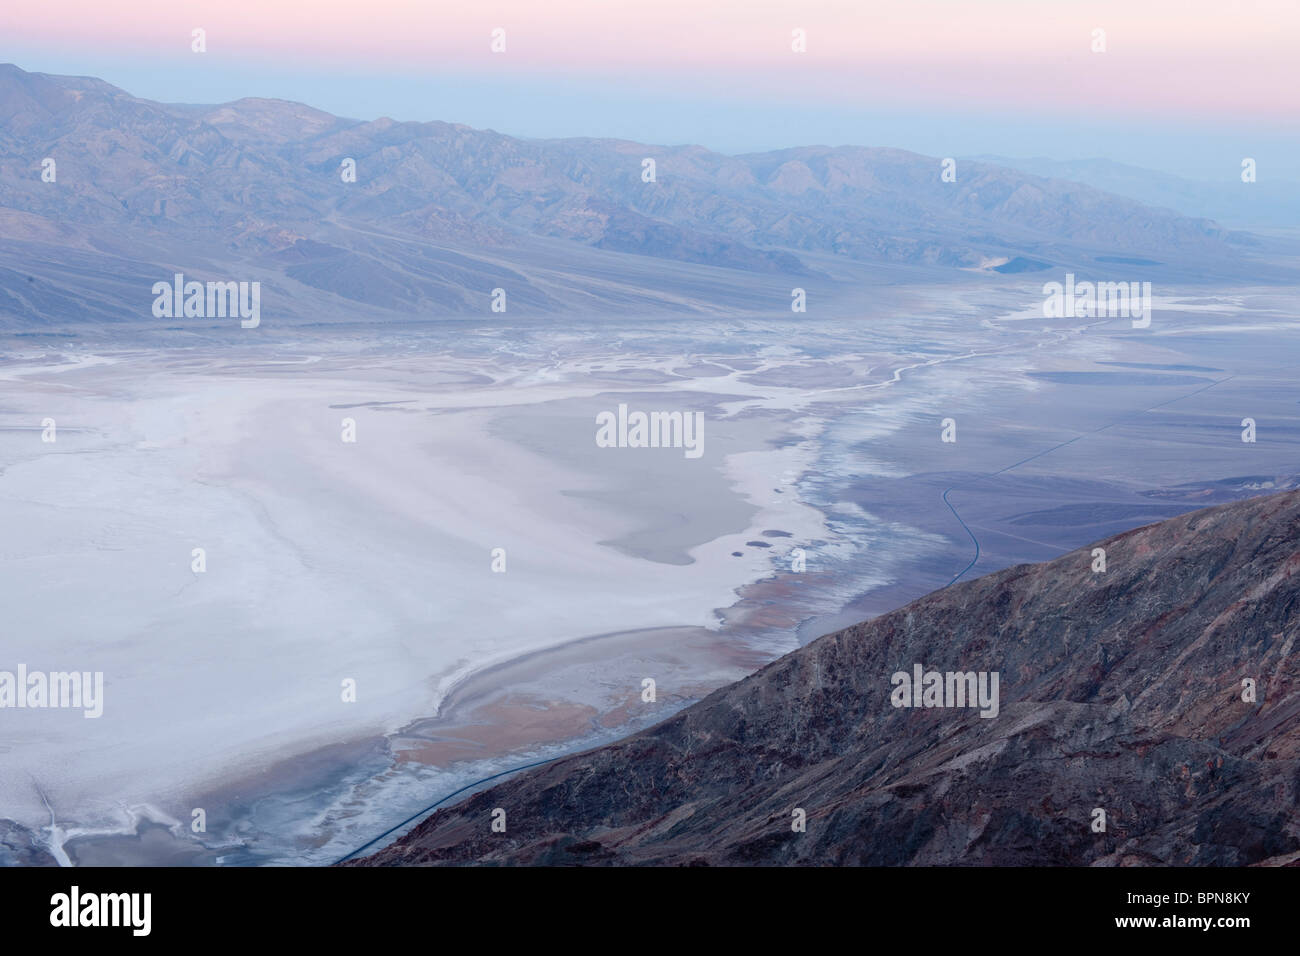 Dantes Blick auf die Salinen von Badwater, Death Valley Nationalpark, Kalifornien, USA Stockfoto